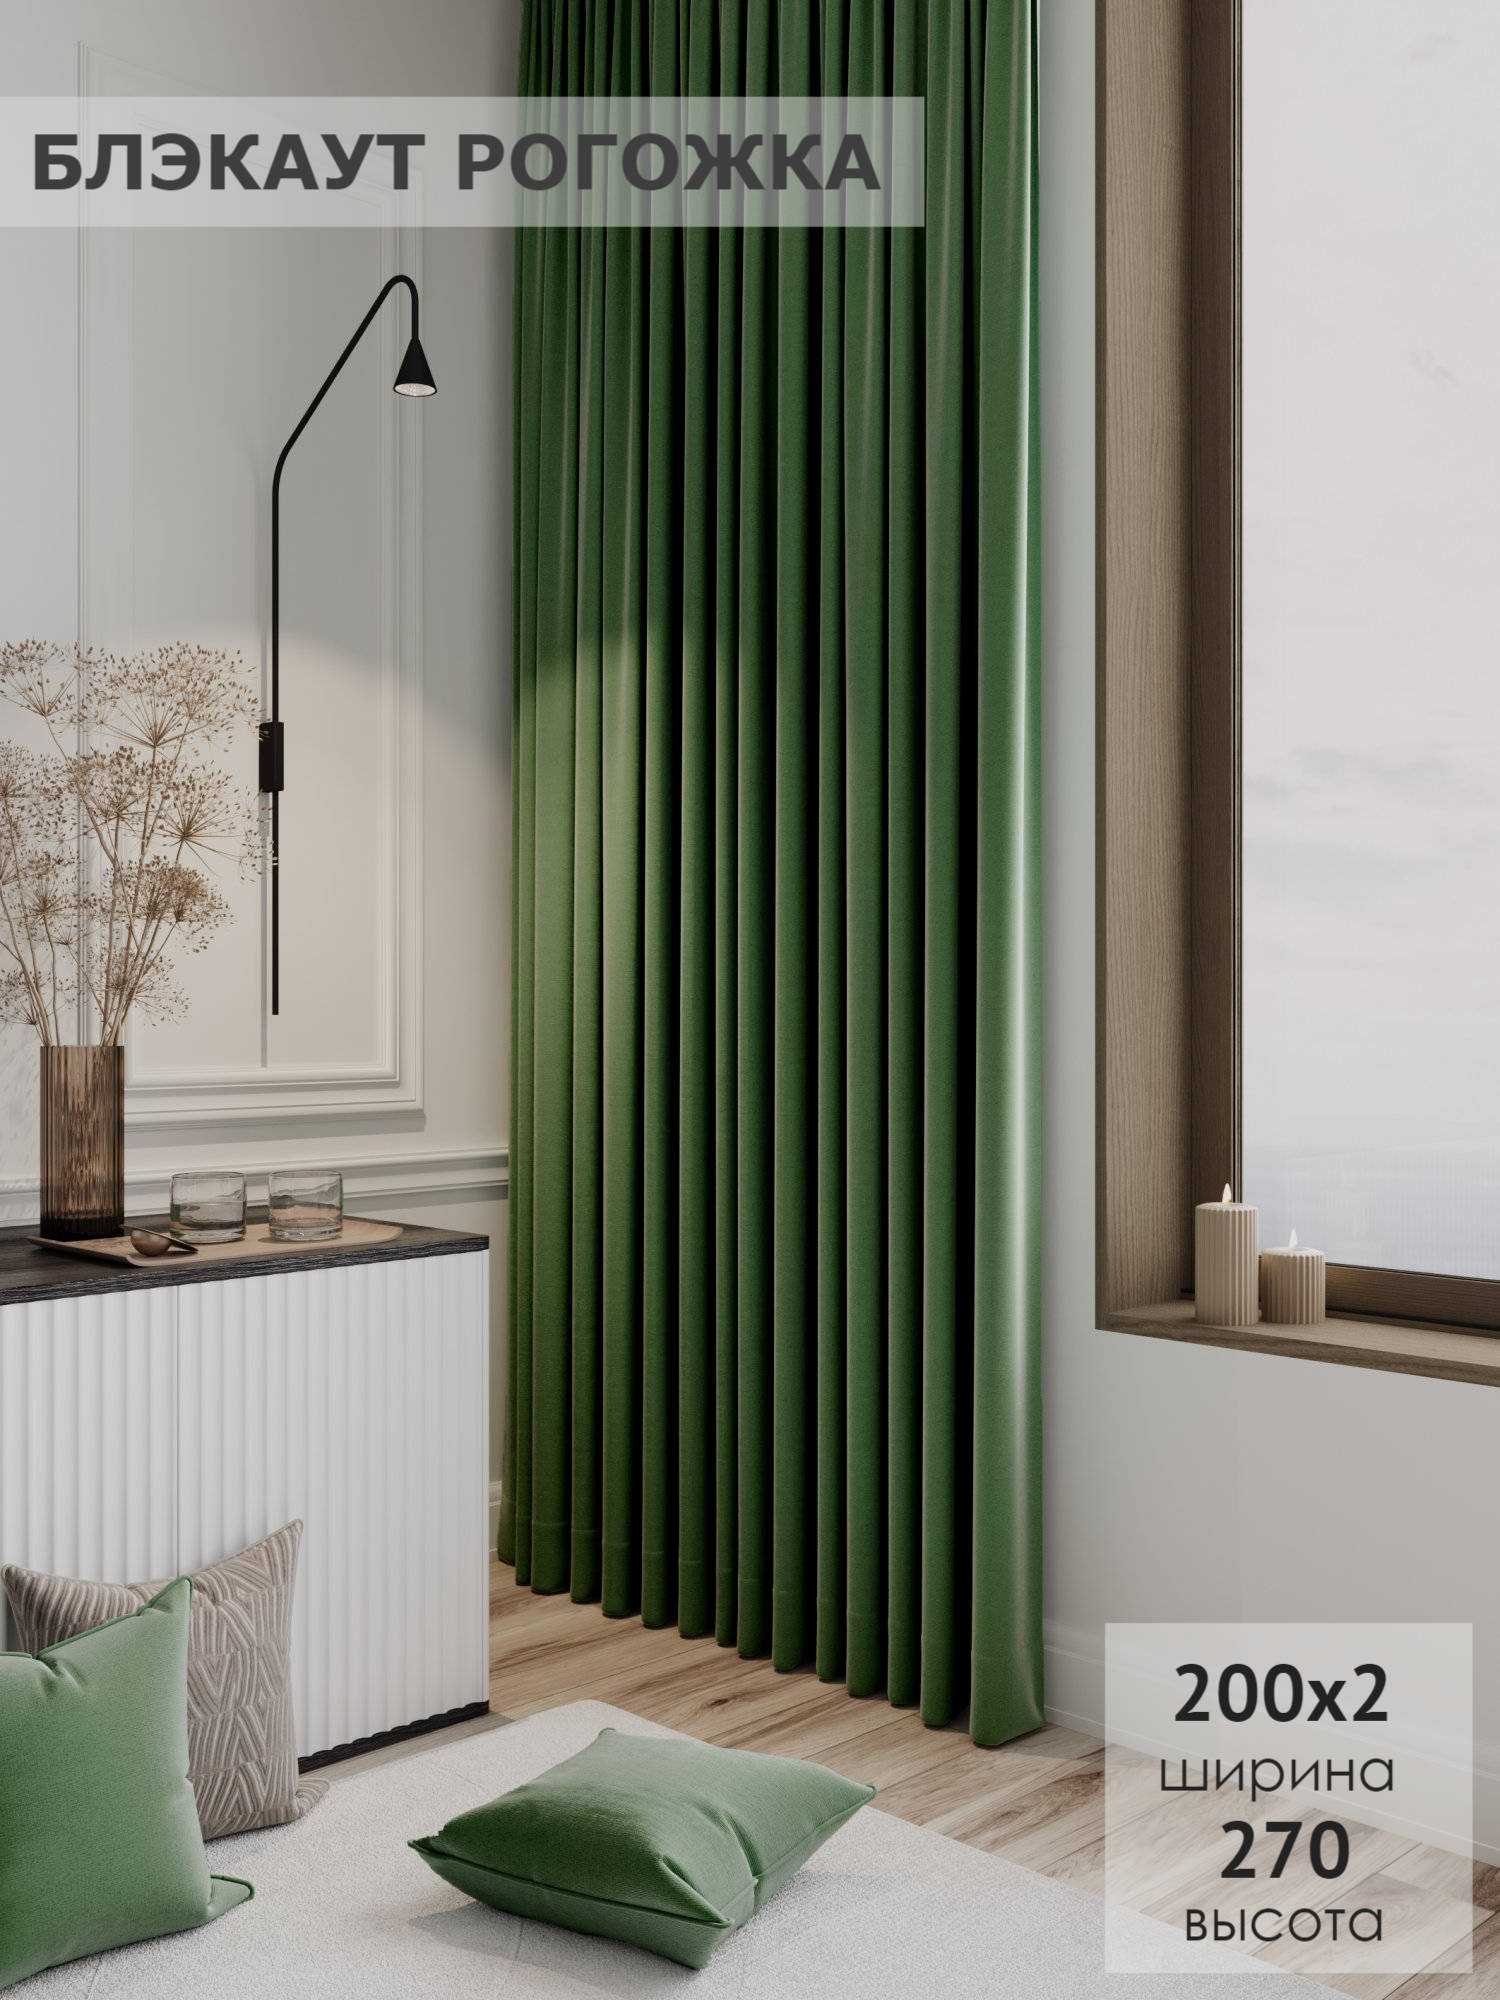 Комплект штор KS interior textile Блэкаут рогожка 200х270 2шт цвет зеленый